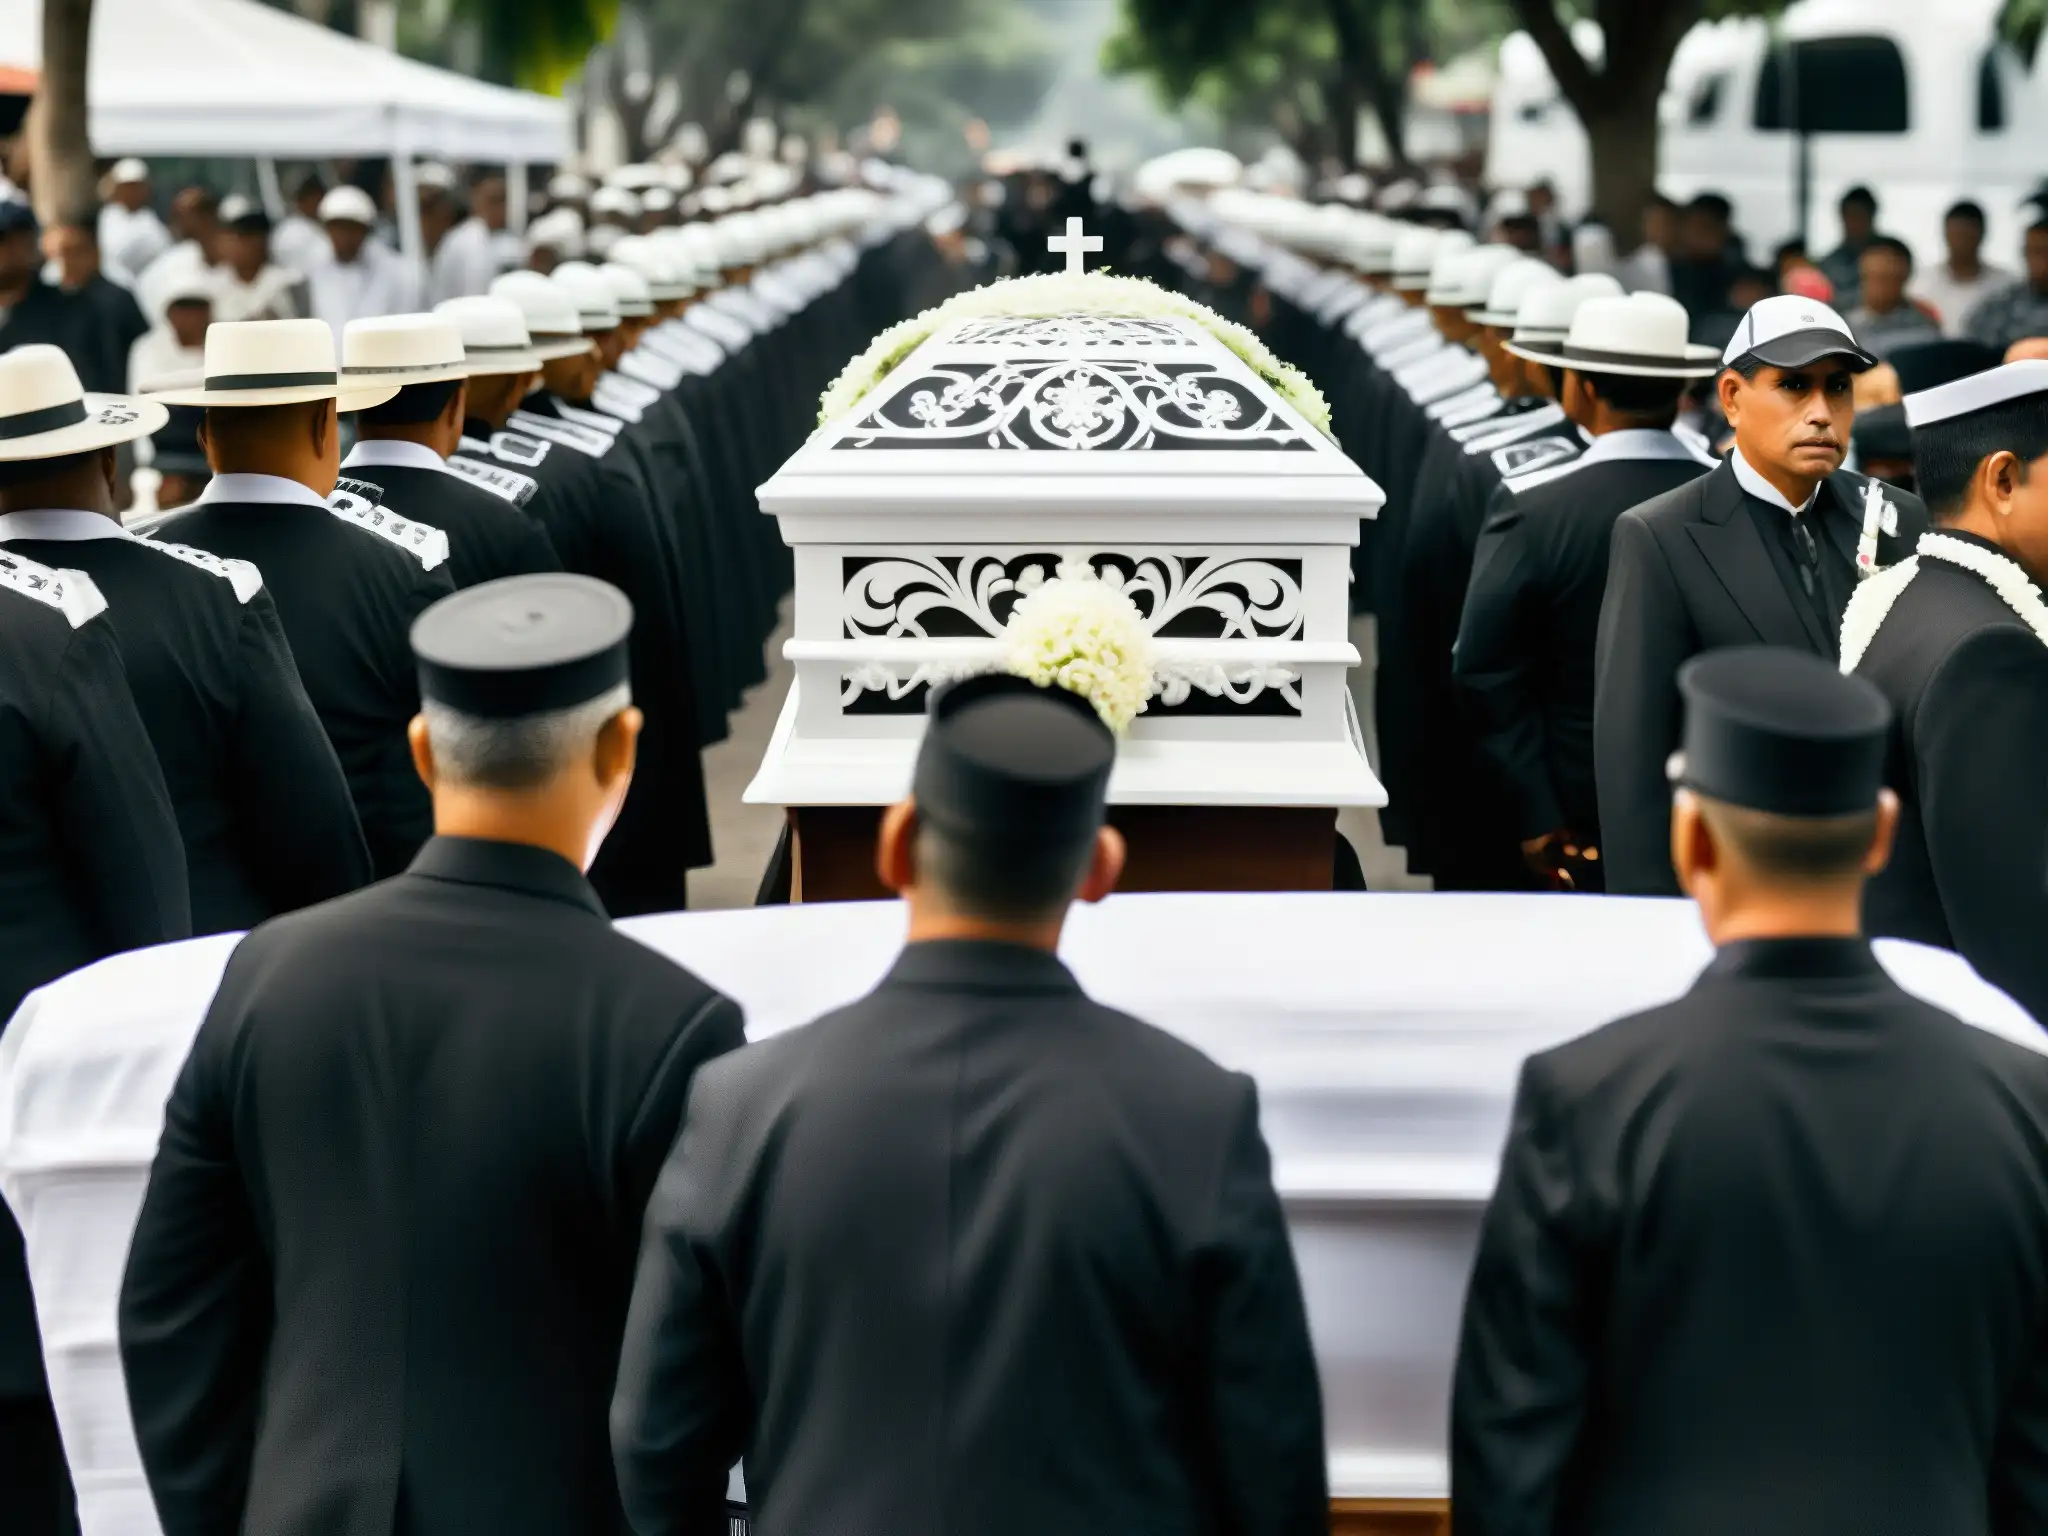 Una procesión funeraria tradicional en Centroamérica, capturada en blanco y negro para transmitir su atmósfera solemne